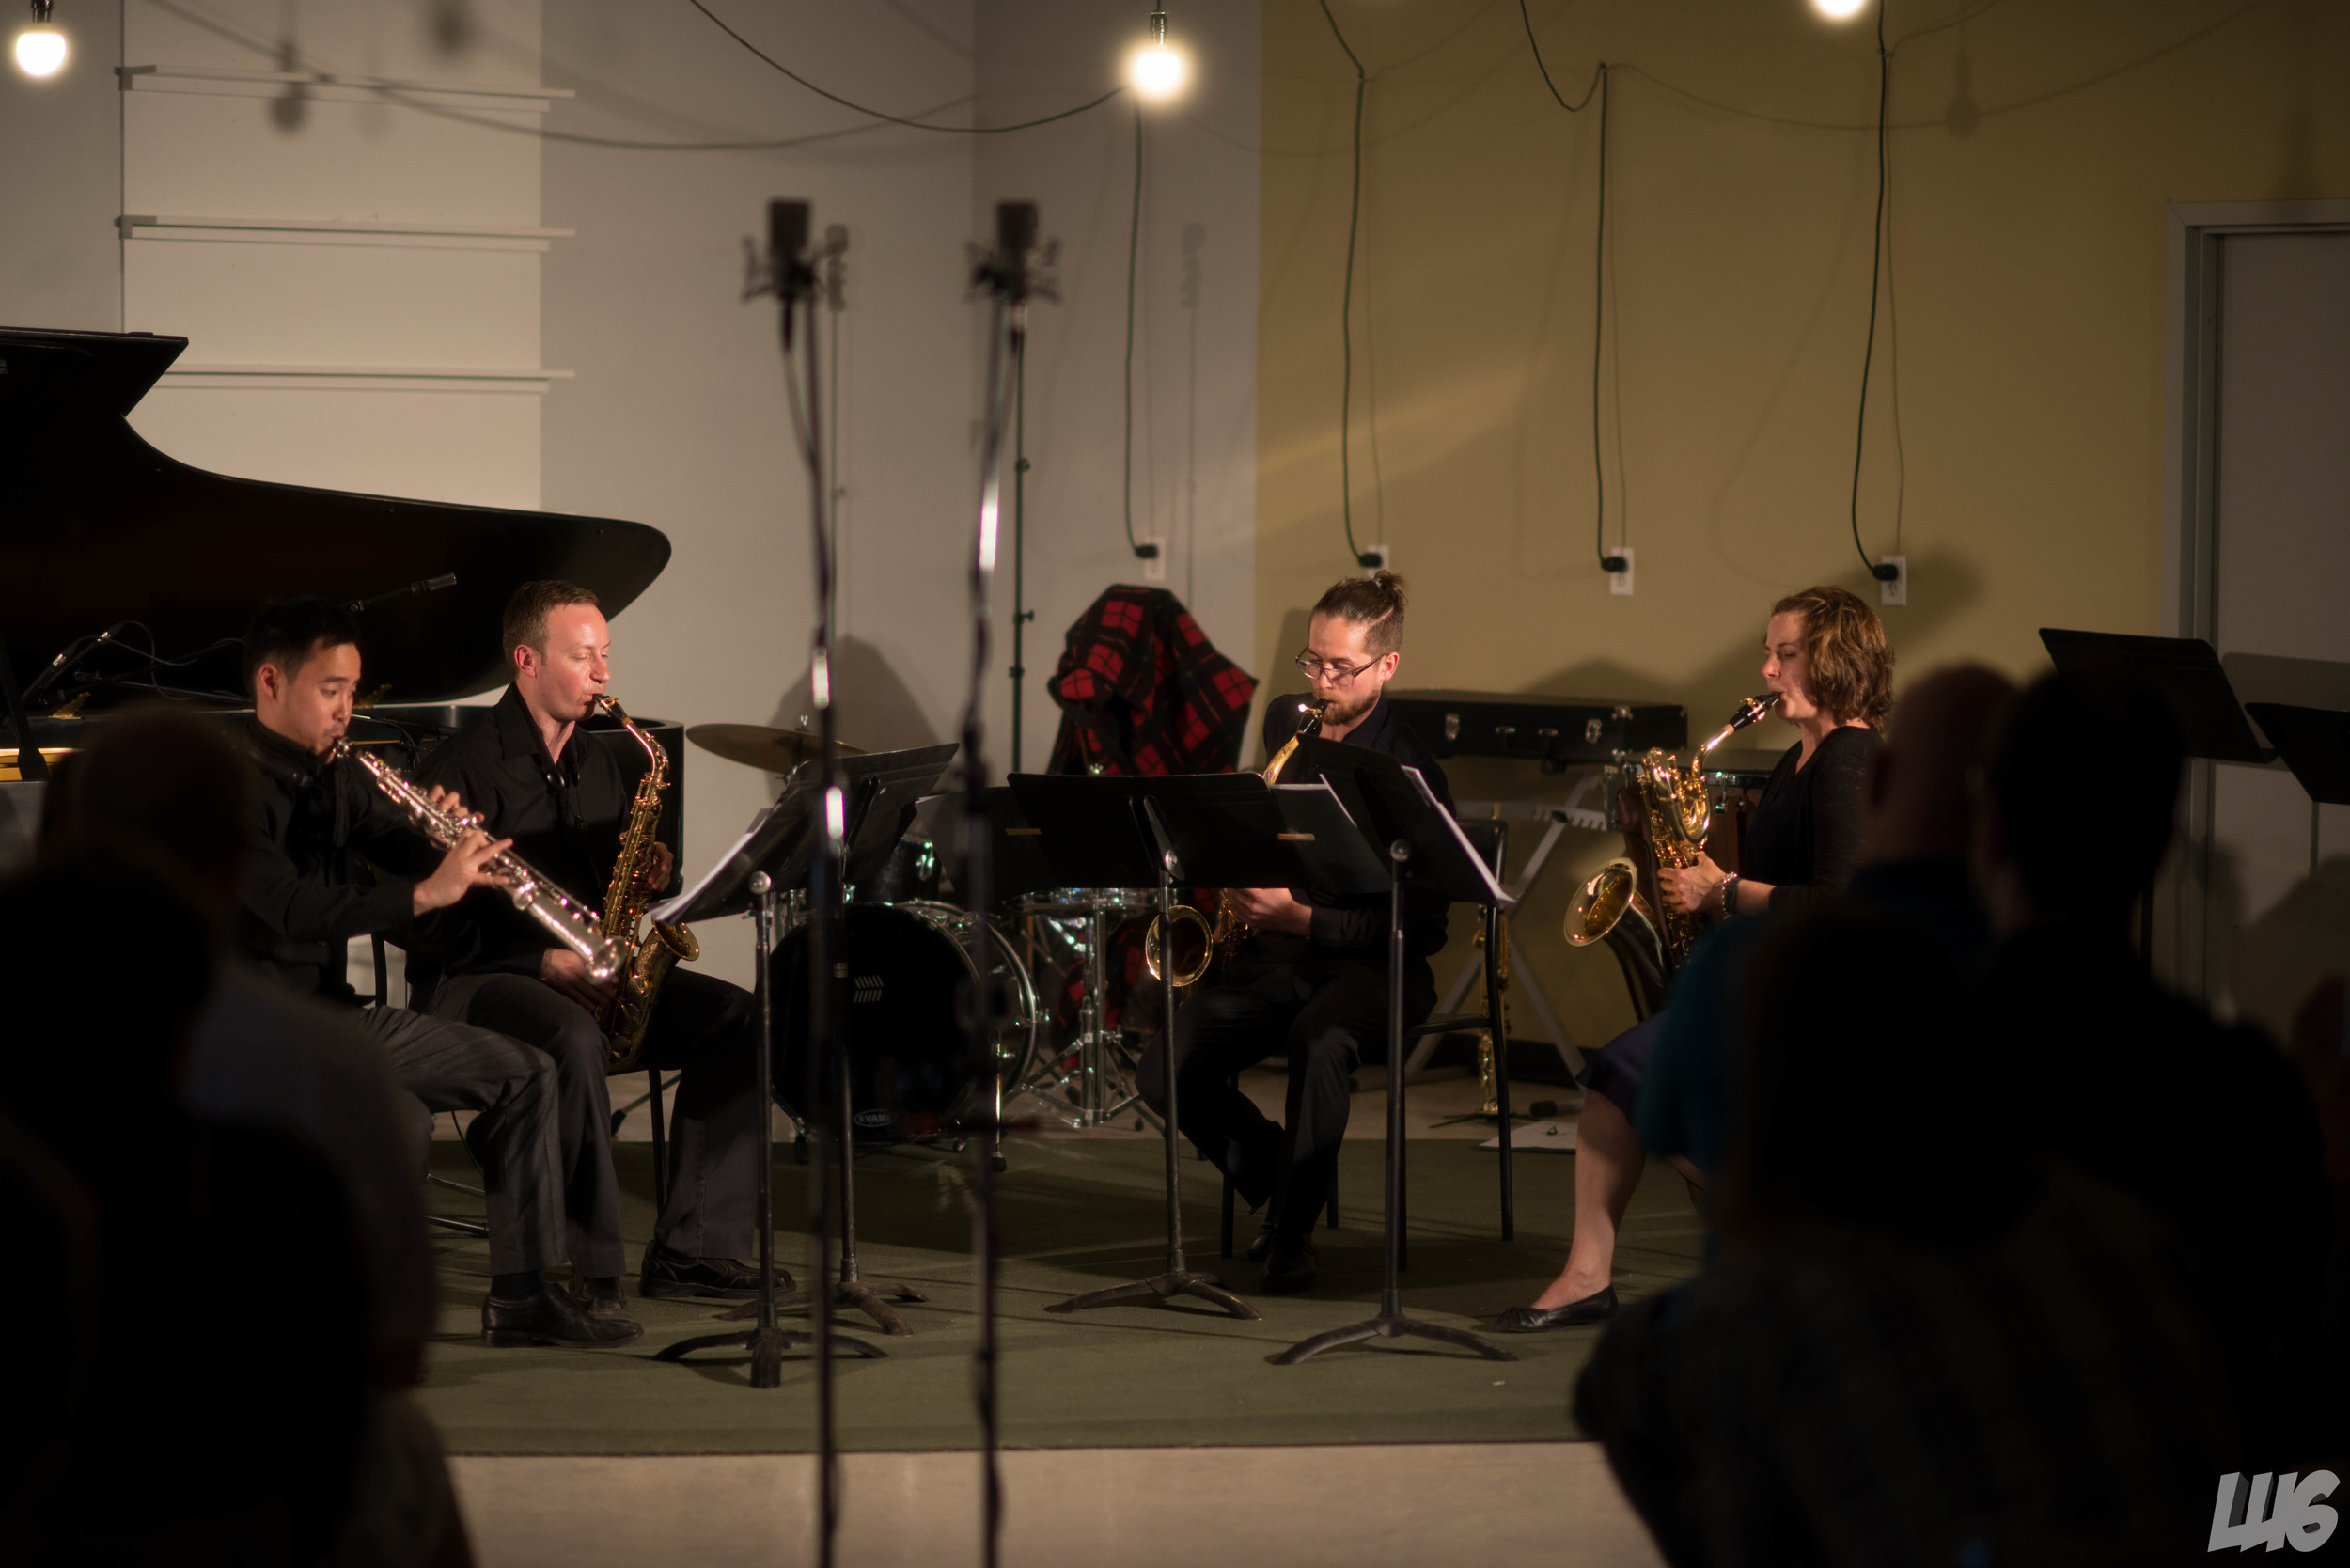  Le Quatuor de saxophones Proteus au festival de musique Strata (2015) à Saskatoon, Canada 